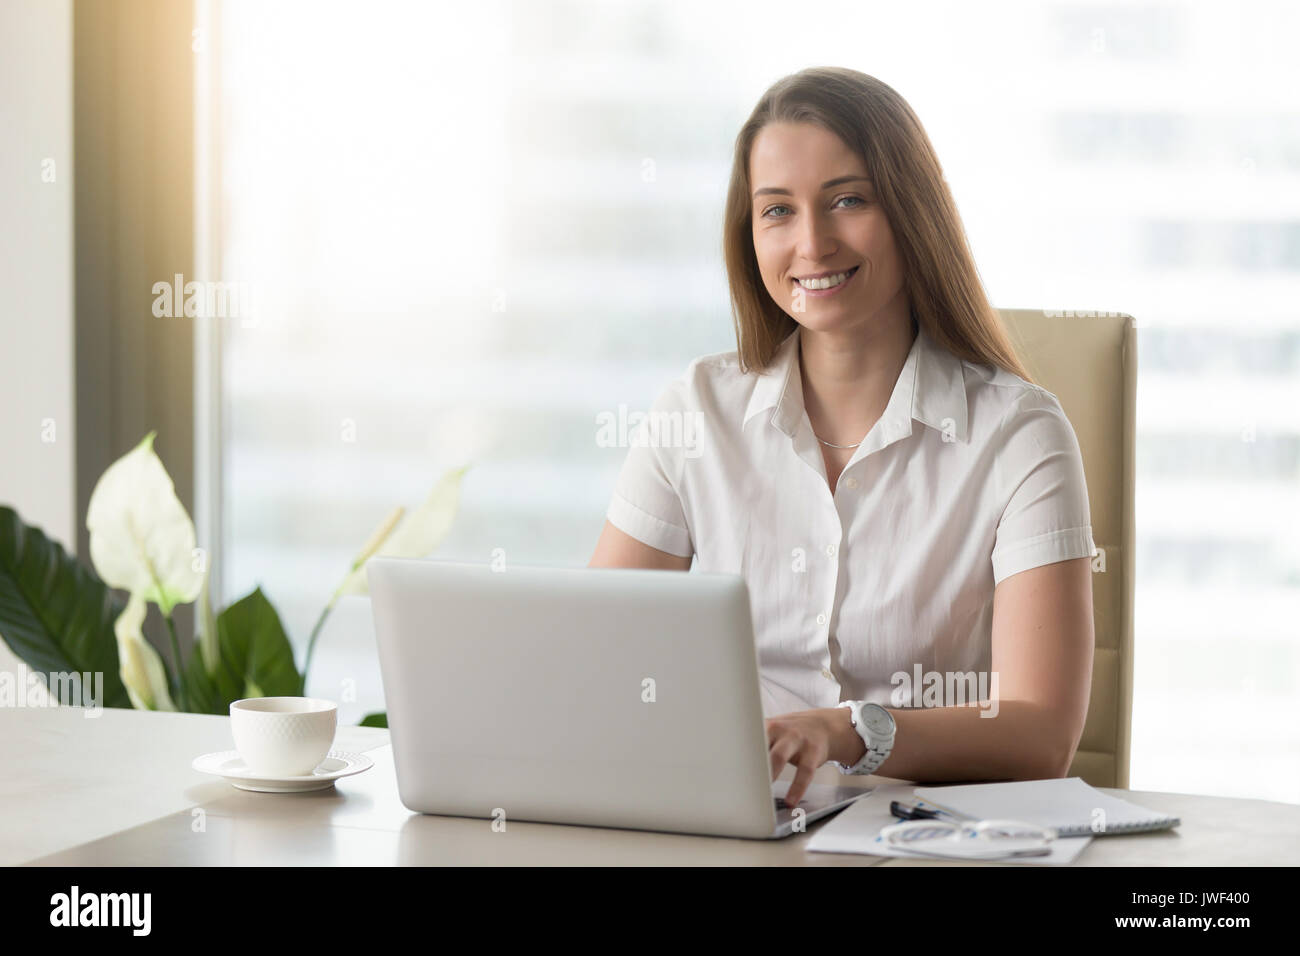 Pretty woman working on laptop, souriant pour l'appareil photo à l'adj Banque D'Images